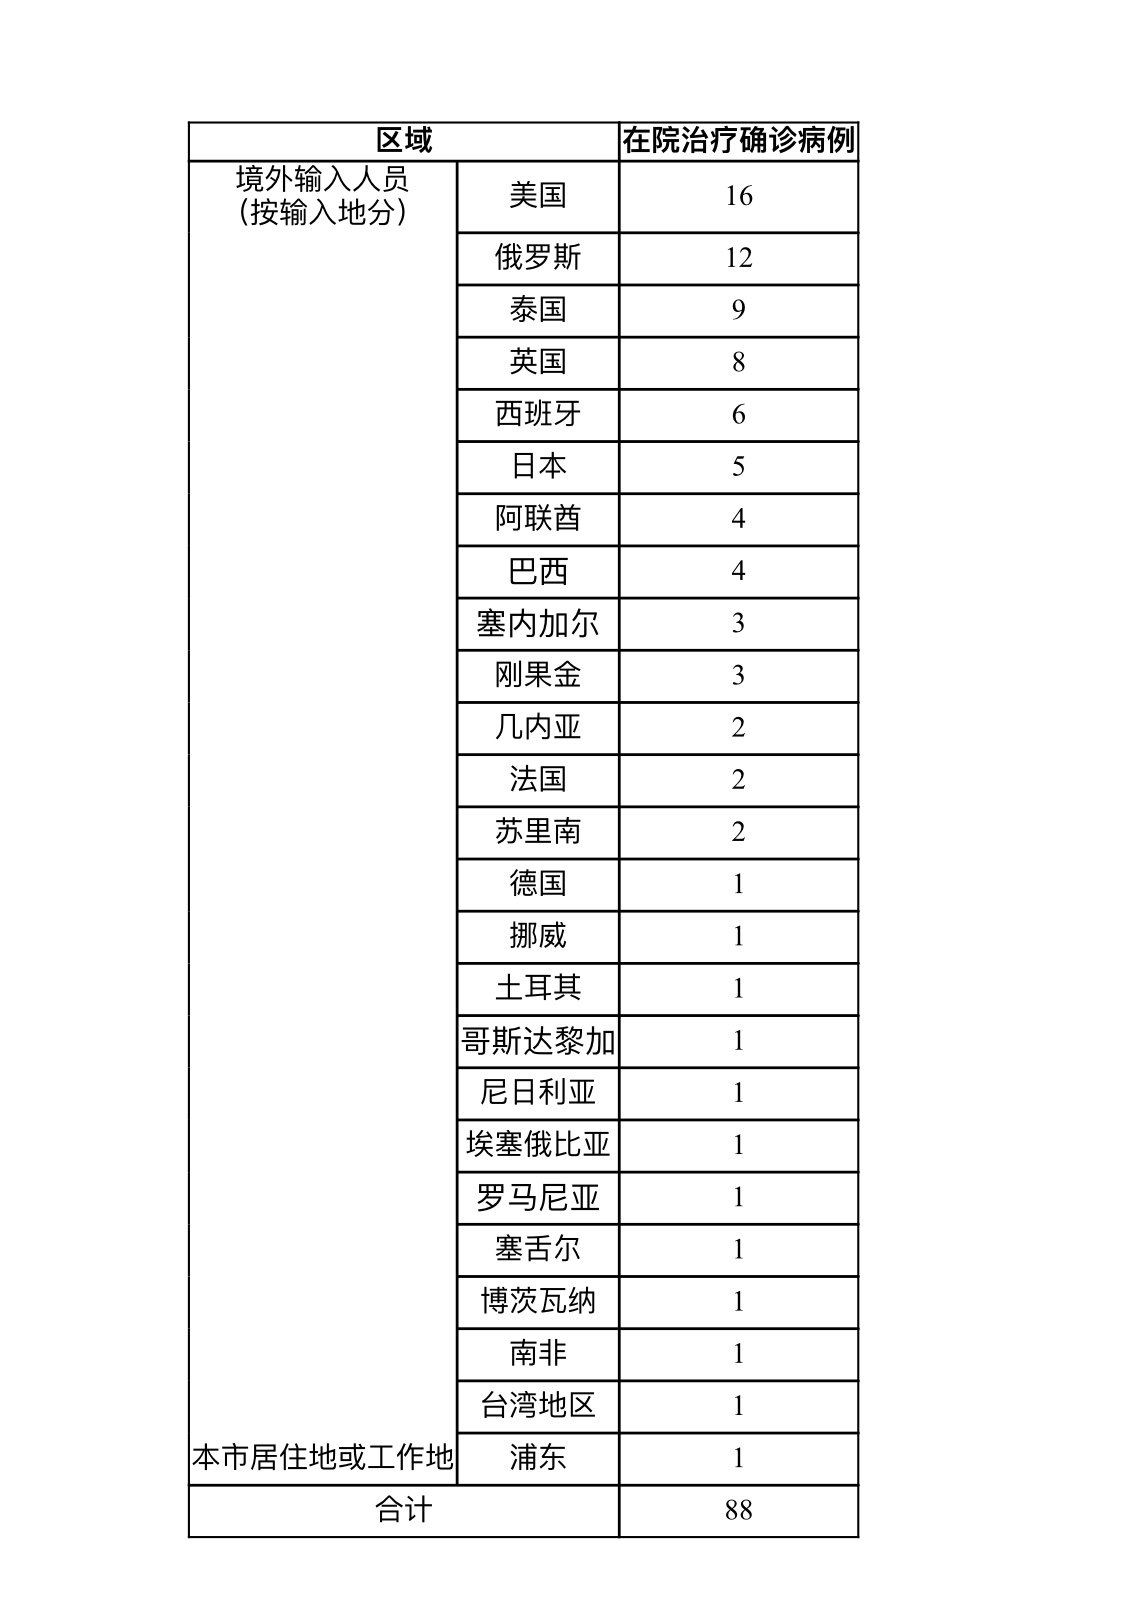 8月9日上海疫情最新实时数据公布 上海昨日新增8例境外输入确诊病例